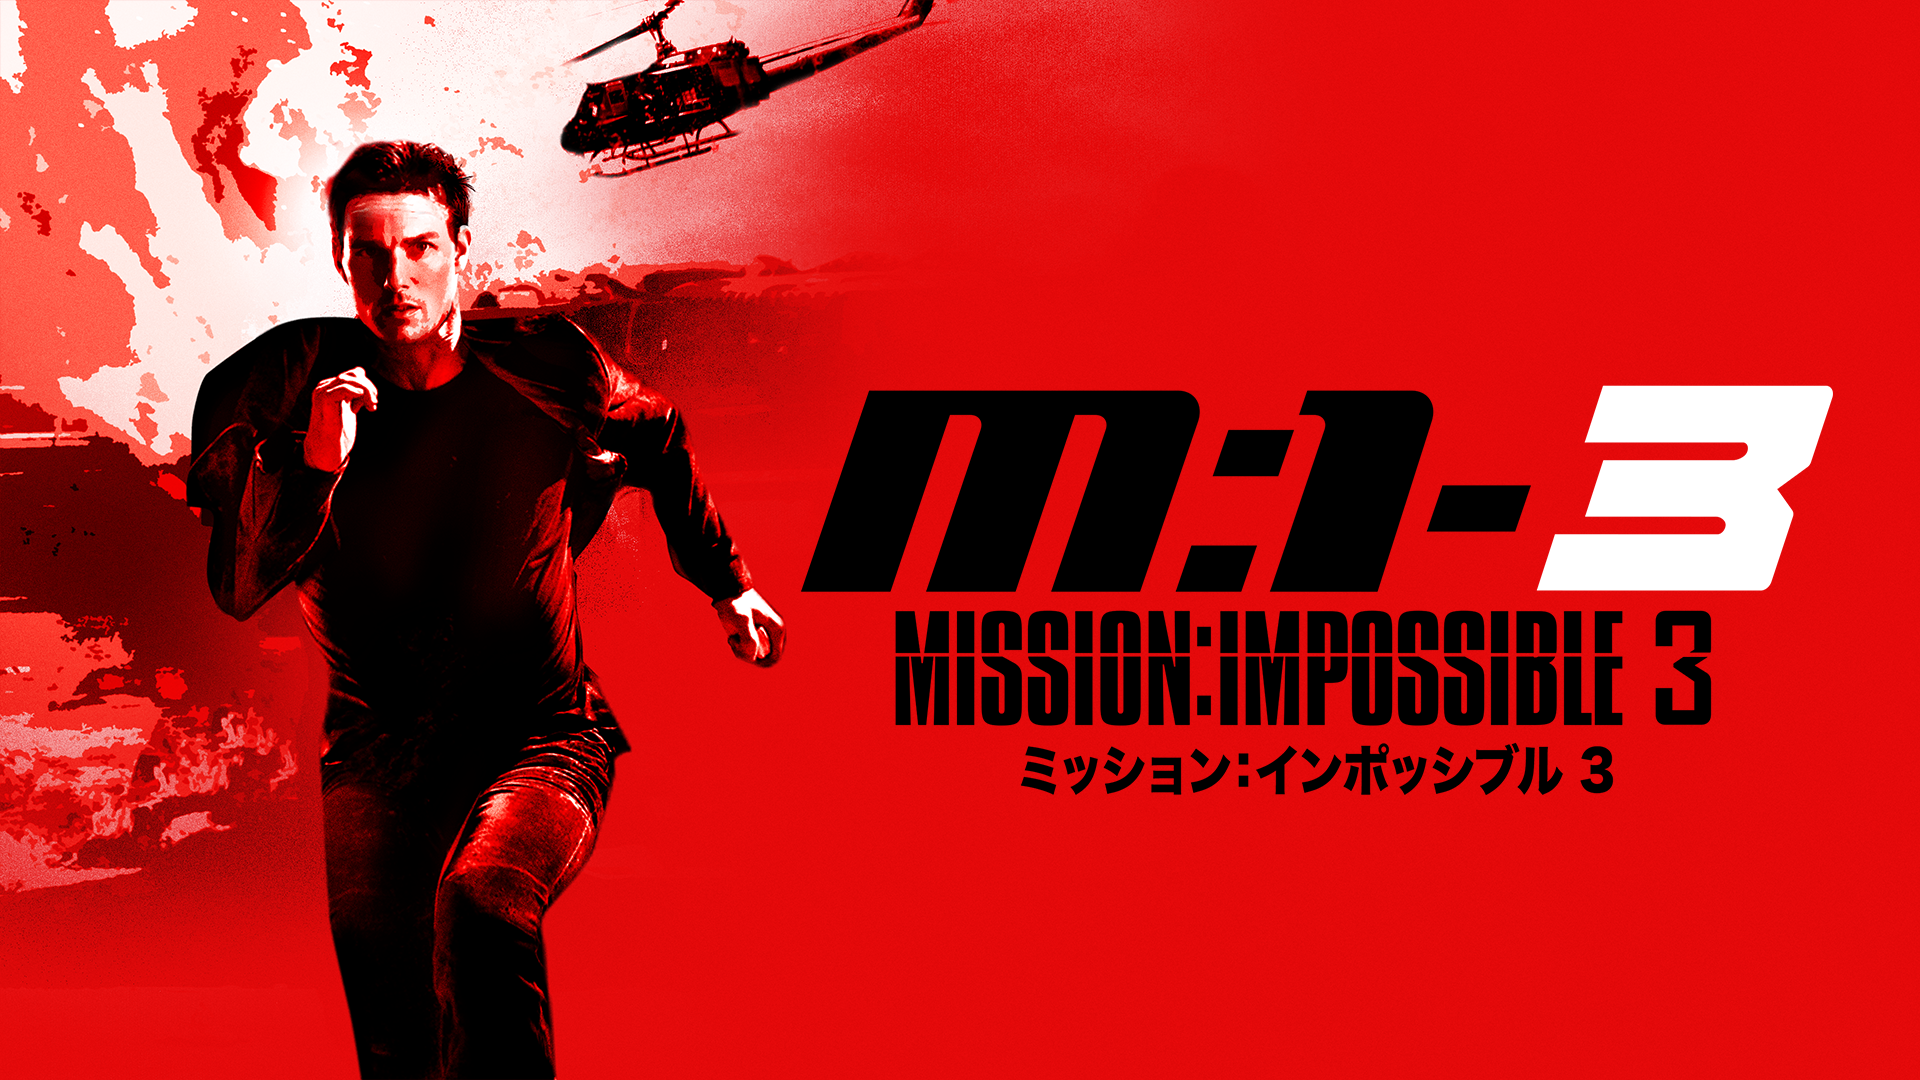 ミッション：インポッシブル３(洋画 / 2006) - 動画配信 | U-NEXT 31 